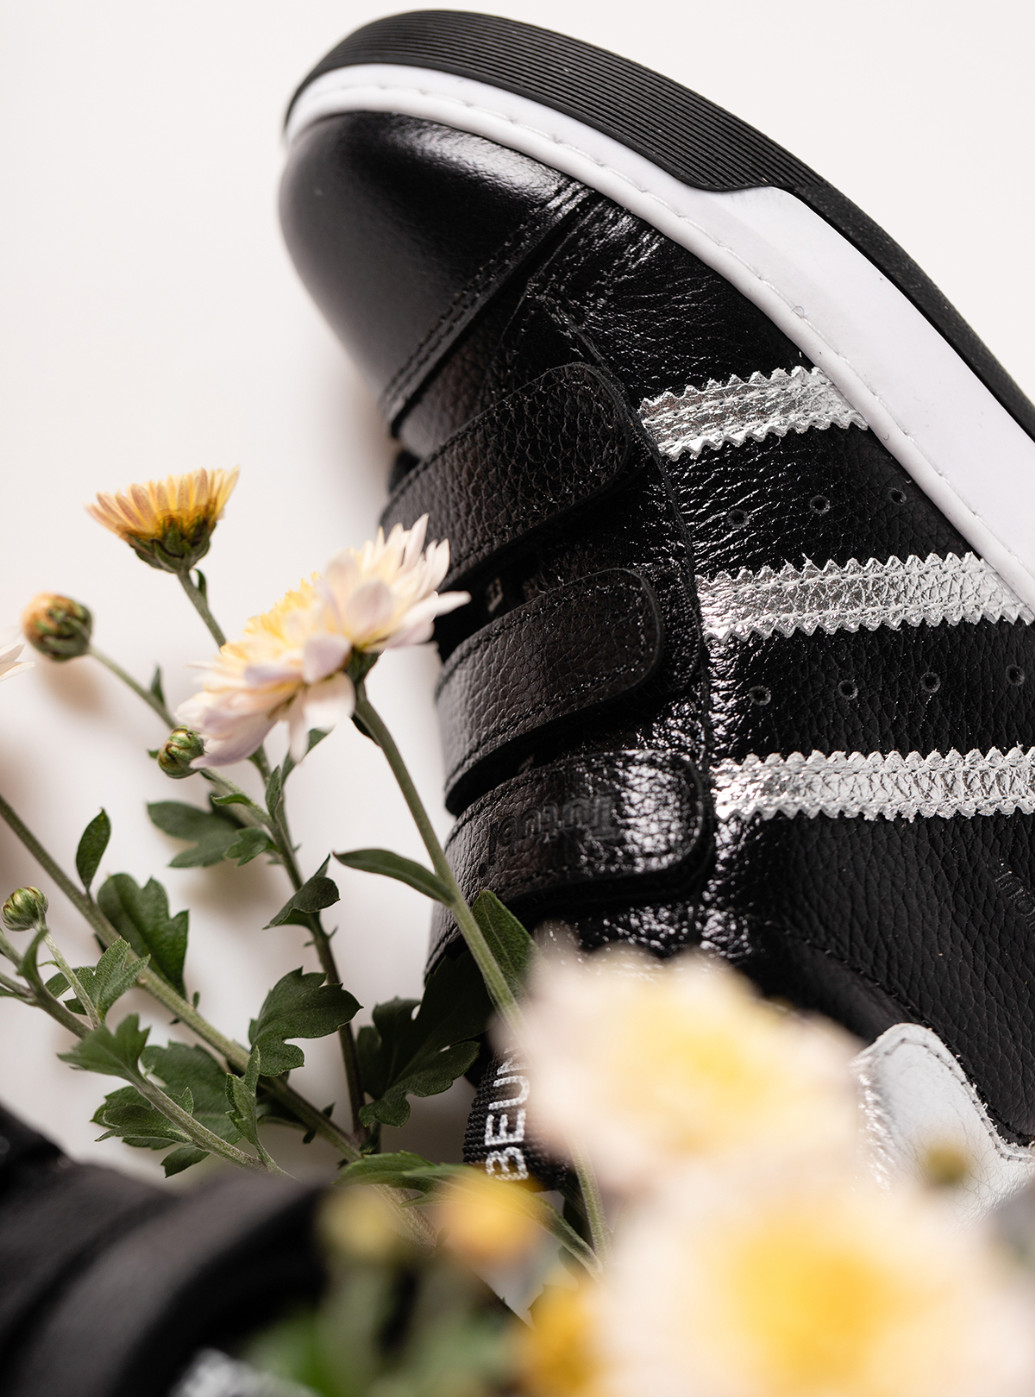 Черные кэжуал осенние кожаные ботинки на девочку Tutubi